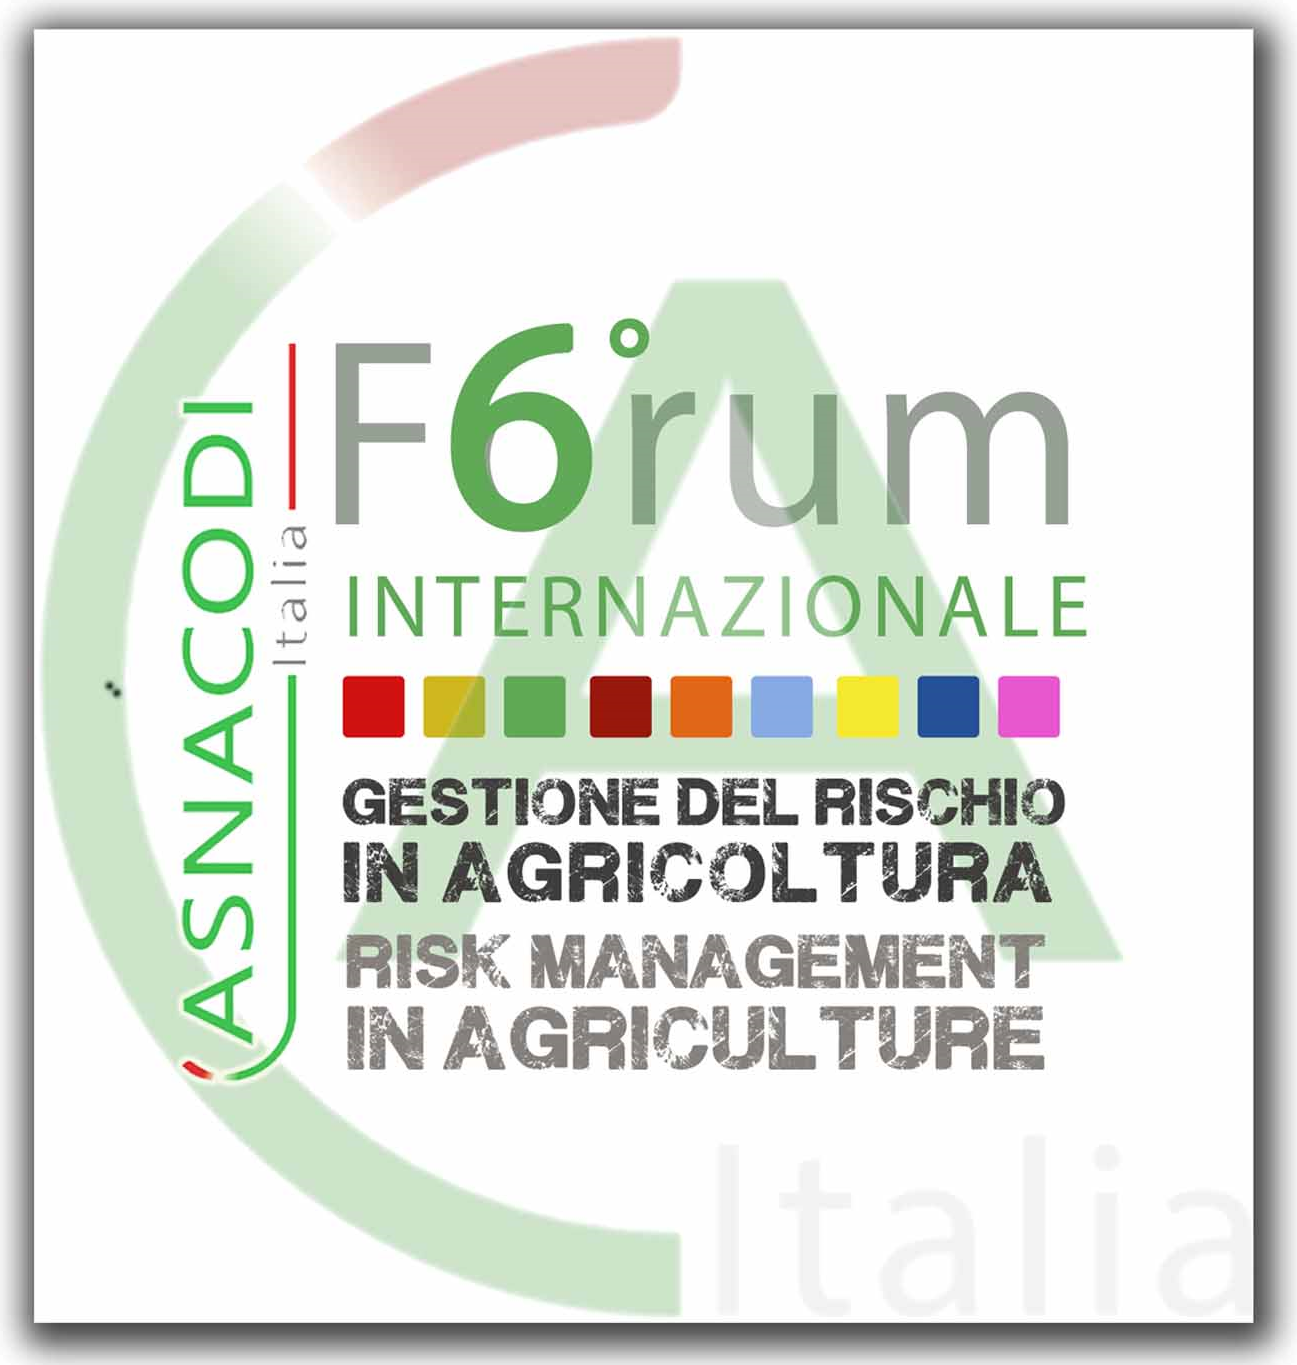 [Evento] VI Forum Internazionale Asnacodi Italia - Gestione del Rischio in Agricoltura